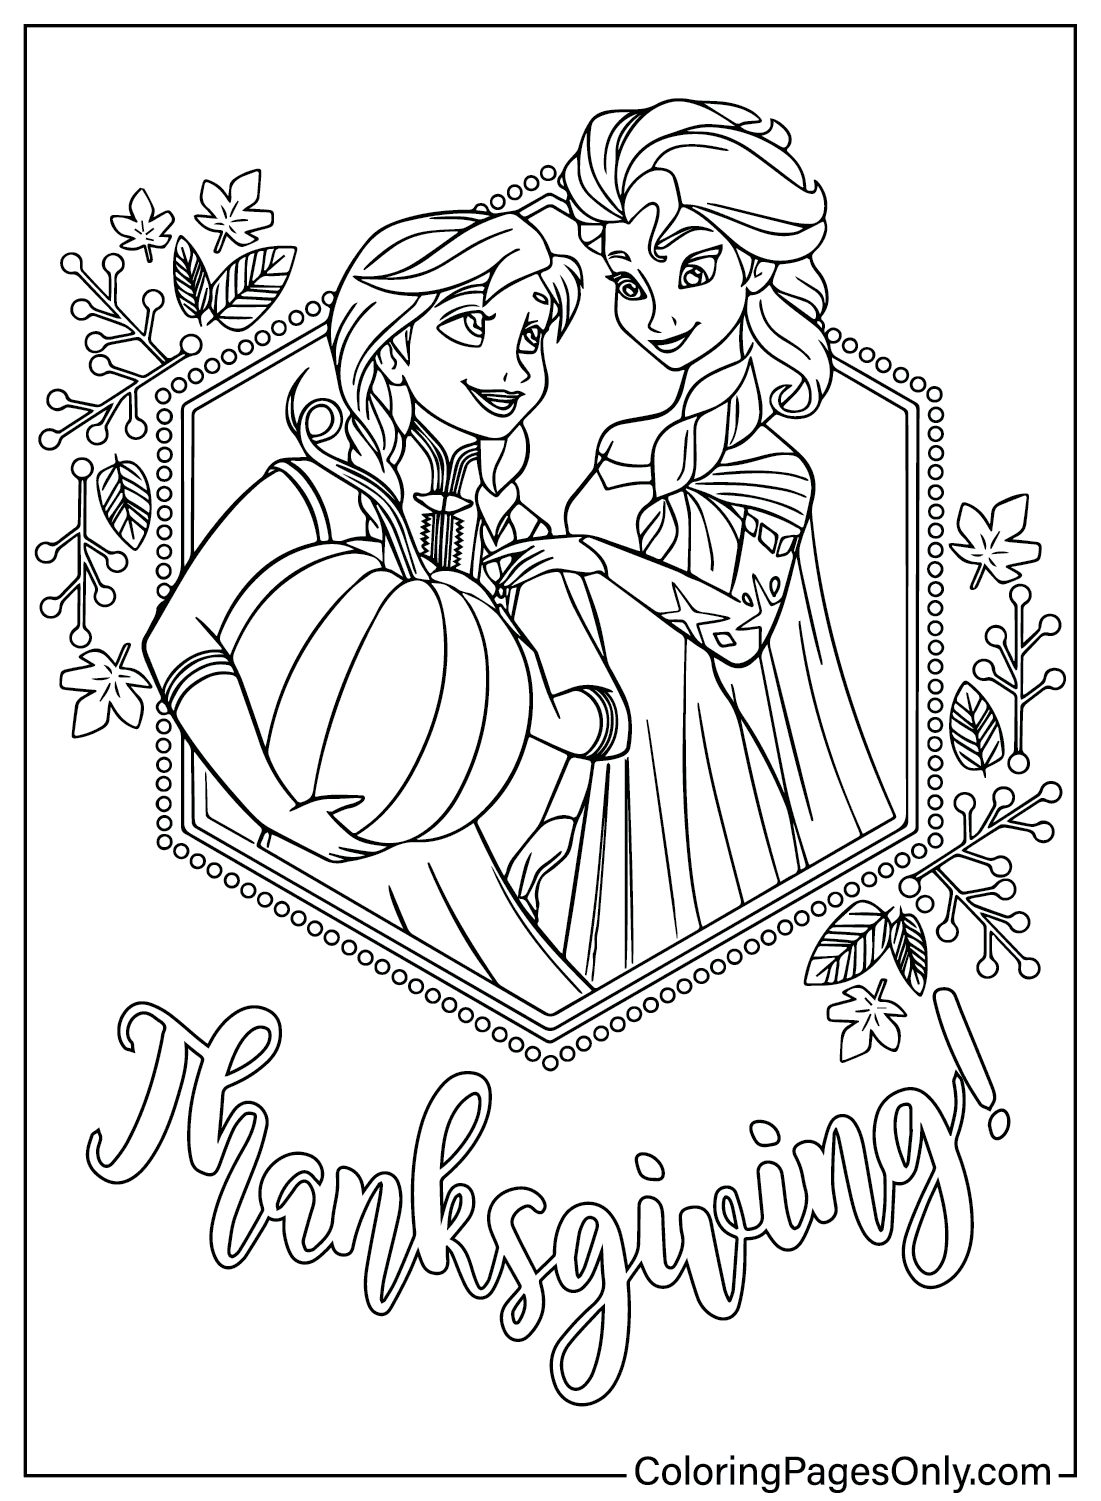 Pagina da colorare del Ringraziamento di Elsa e Anna dal Ringraziamento Disney